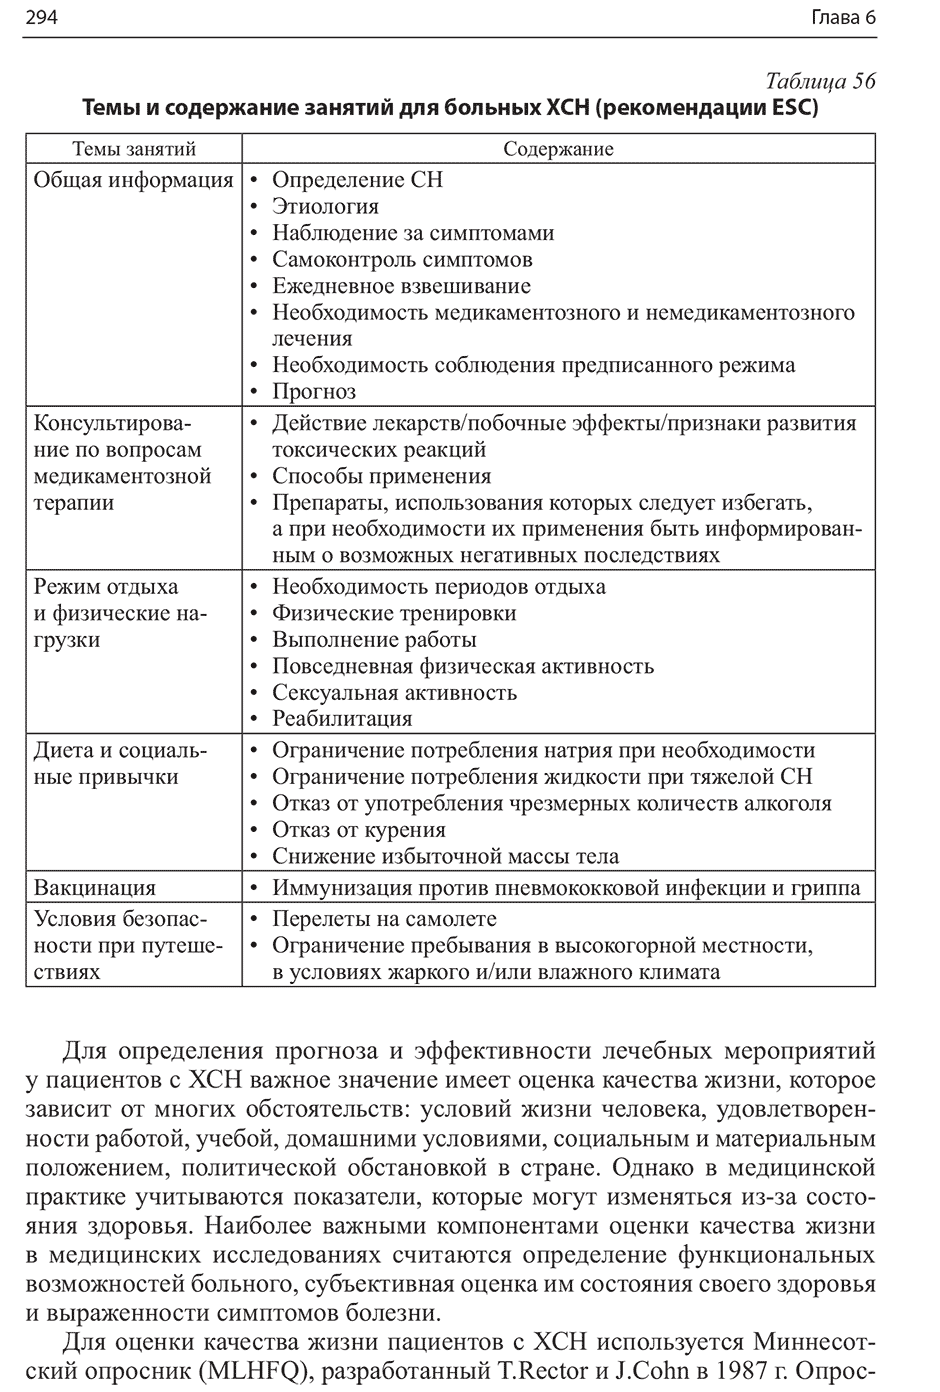 Темы и содержание занятий для больных ХСН (рекомендации ESC)